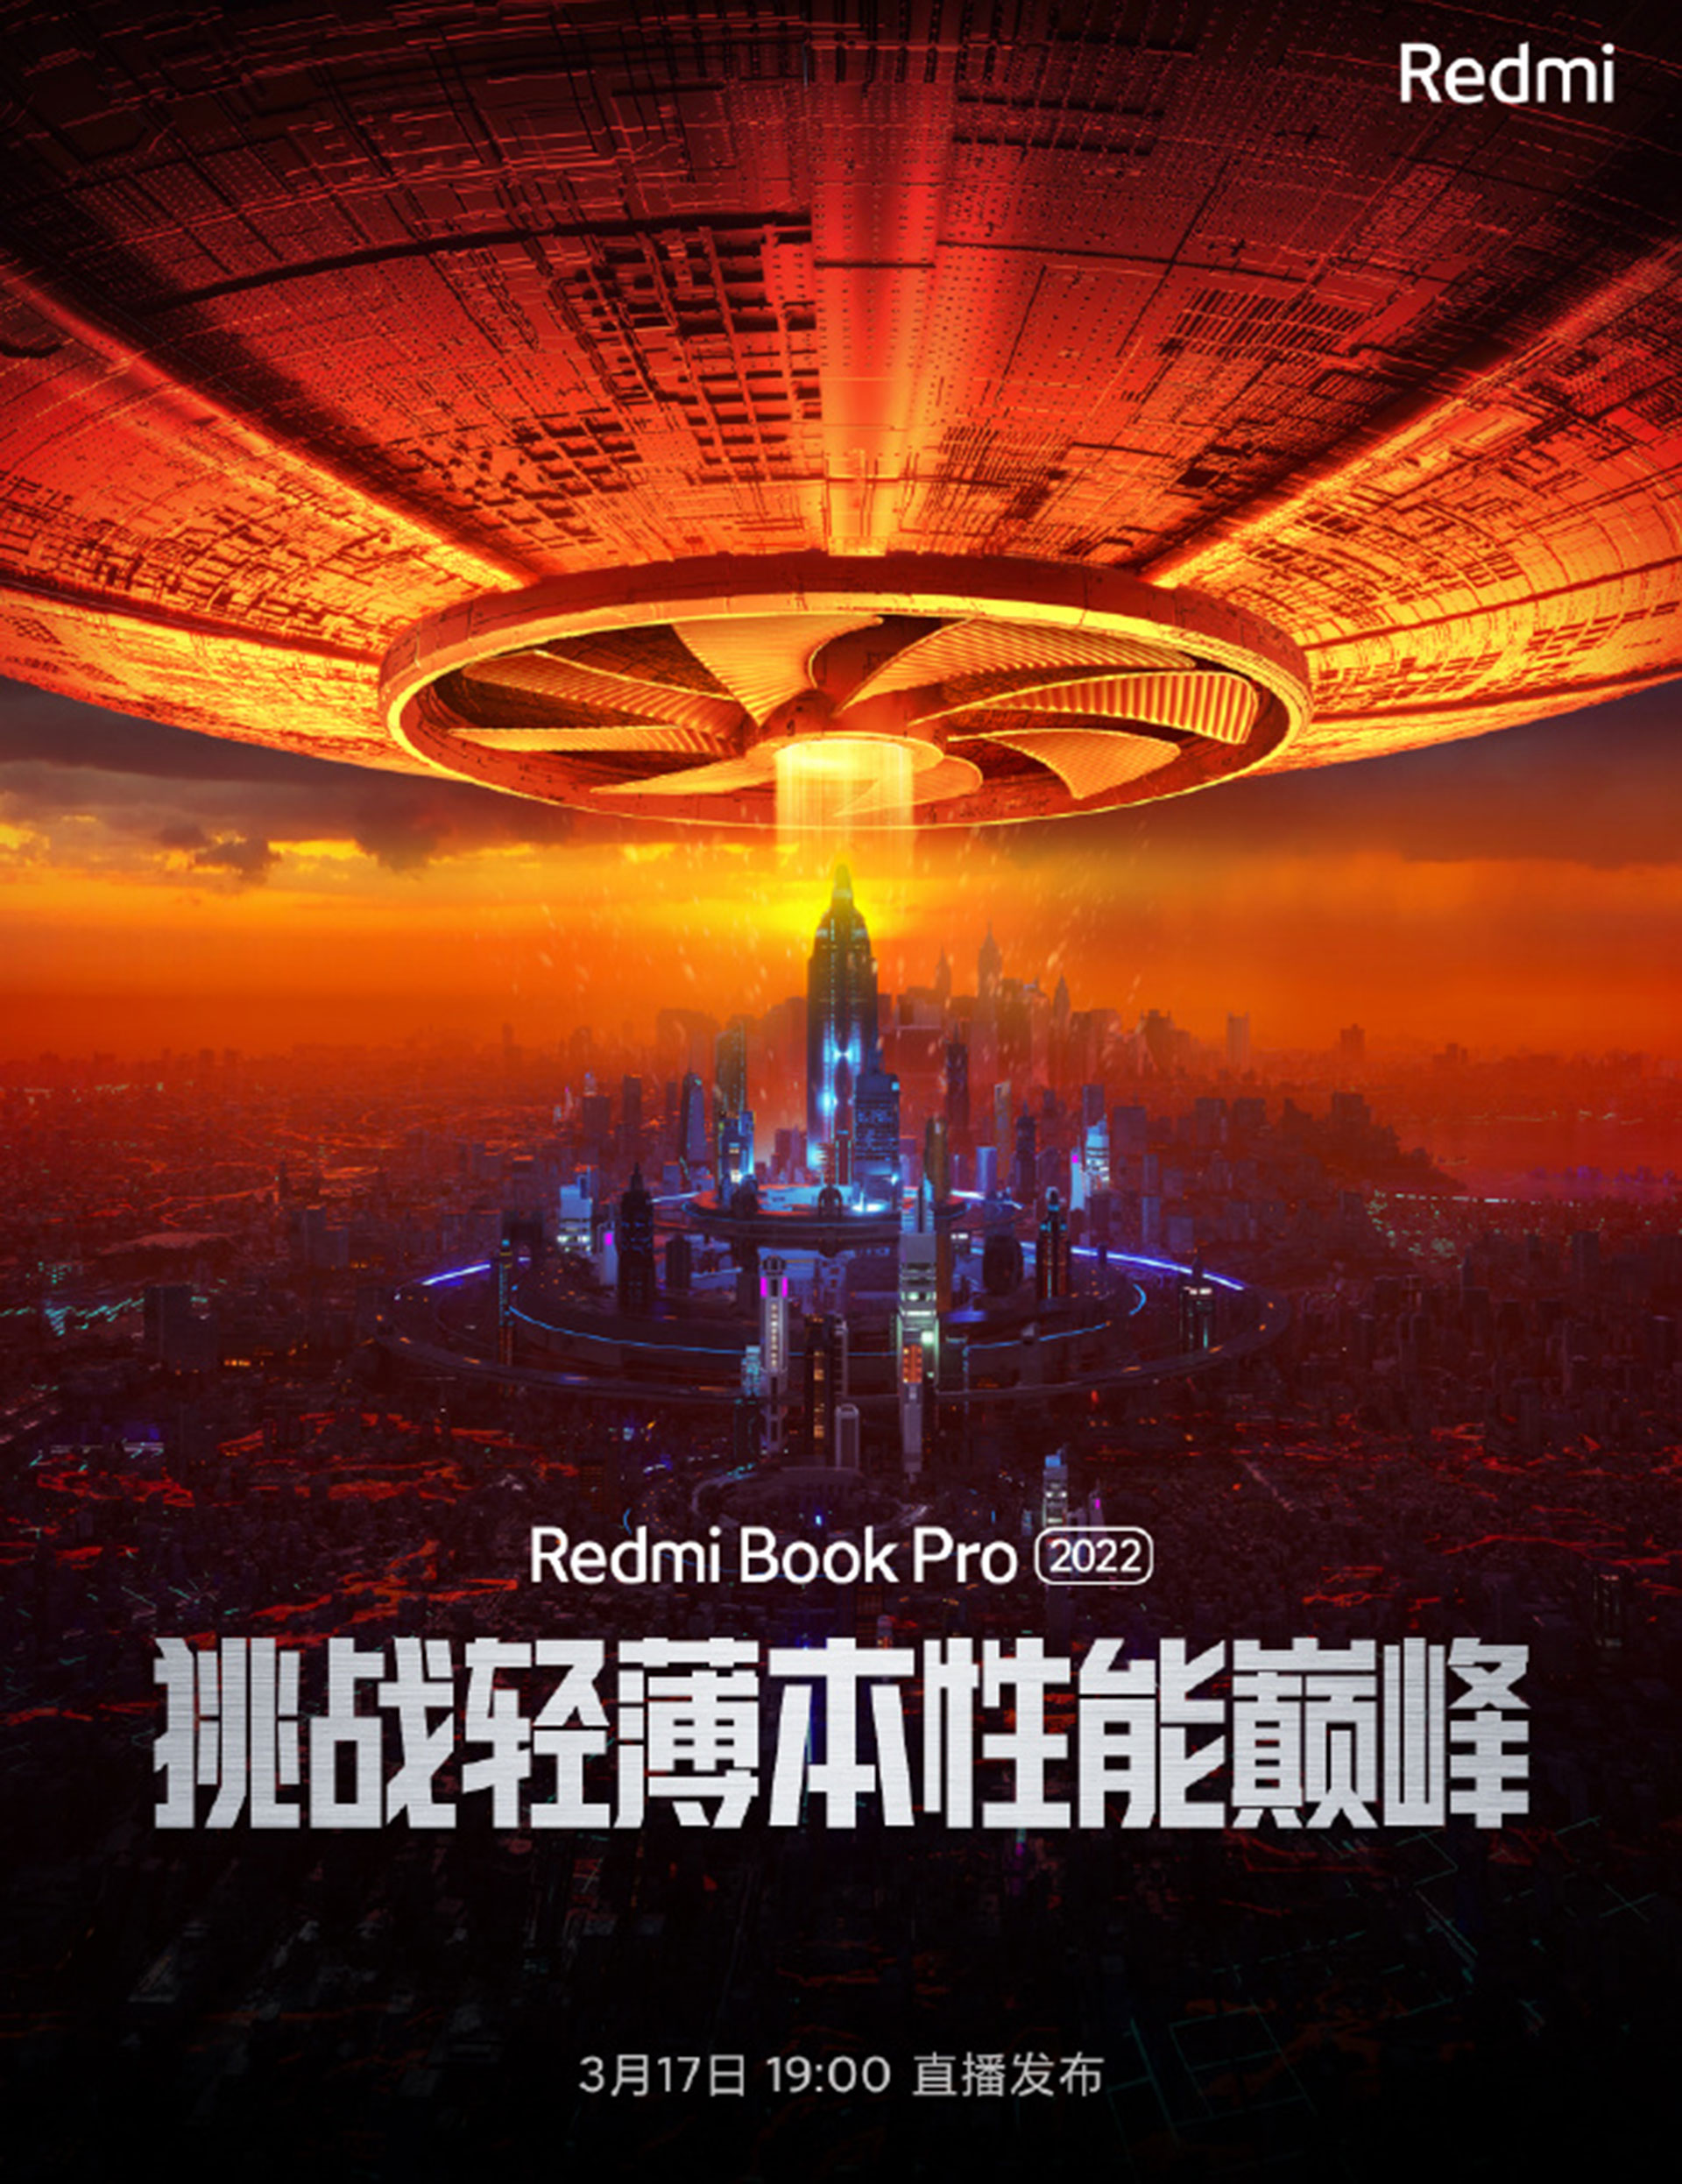 پوستر تبلیغاتی منتشرشده از RedmiBook Pro 2022